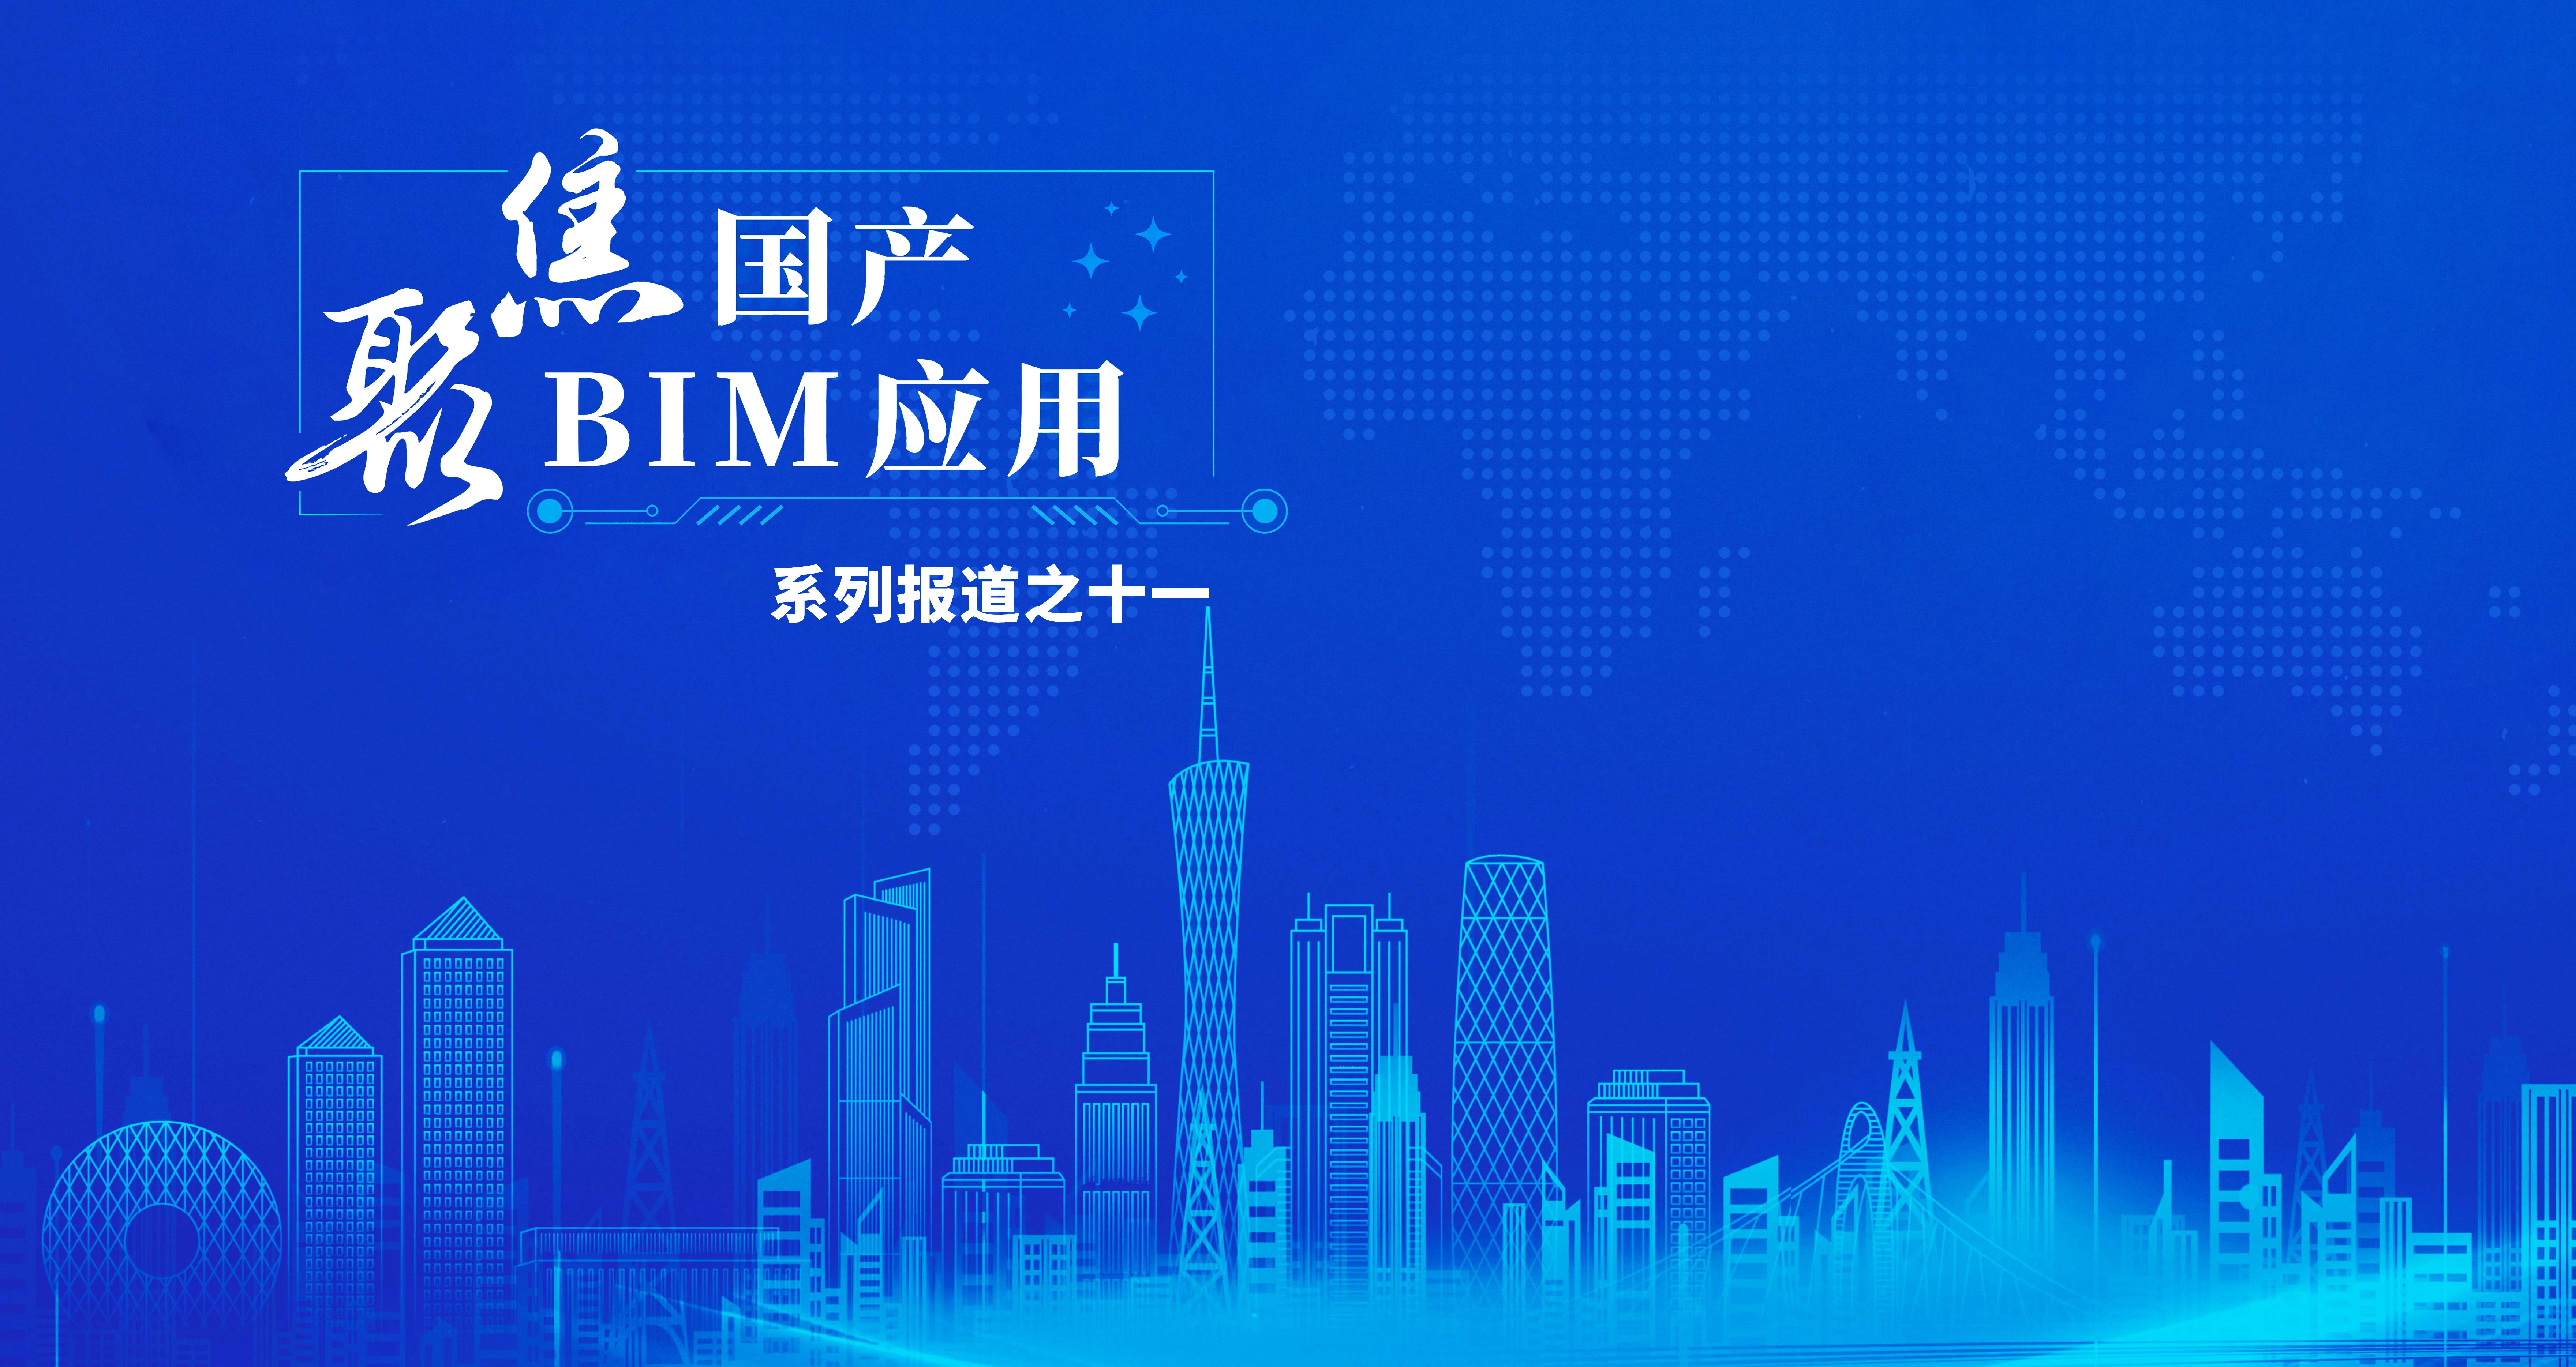 林同棪国际中国公司：构建数字化能力，加快转型升级